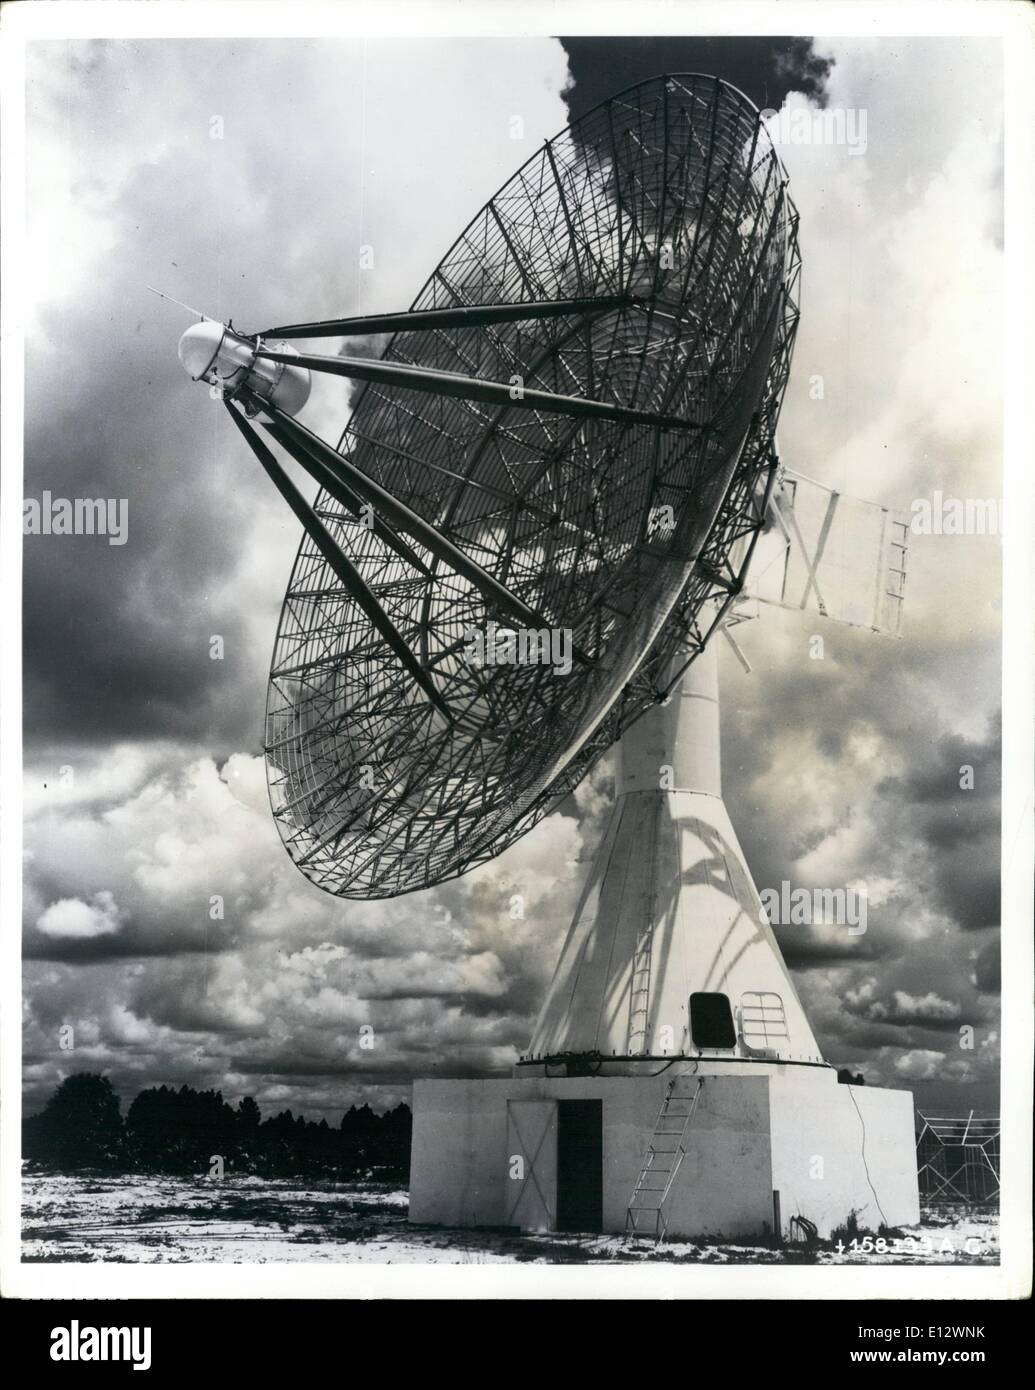 El 26 de febrero de 2012 - La Fuerza Aérea de los EE.UU TLM-18 seguimiento automático de antena de telemetría, considerada la más grande de su tipo en existencia, sigue los caminos de misiles americanos que raya abajo la gama de test de 5000 millas que tiene su principio en Cabo Cañaveral, Florida. El TLM-18 es una antena de 60 pies de ancho montado sobre una torre de acero de 38 pies. Gira para seguir el curso de los misiles balísticos. En total, cuatro de los gigantes ojos electrónicos, construido por la radiación, Inc. de Melbourne, Florida, acabarán por supervisar toda la gama de misiles Foto de stock